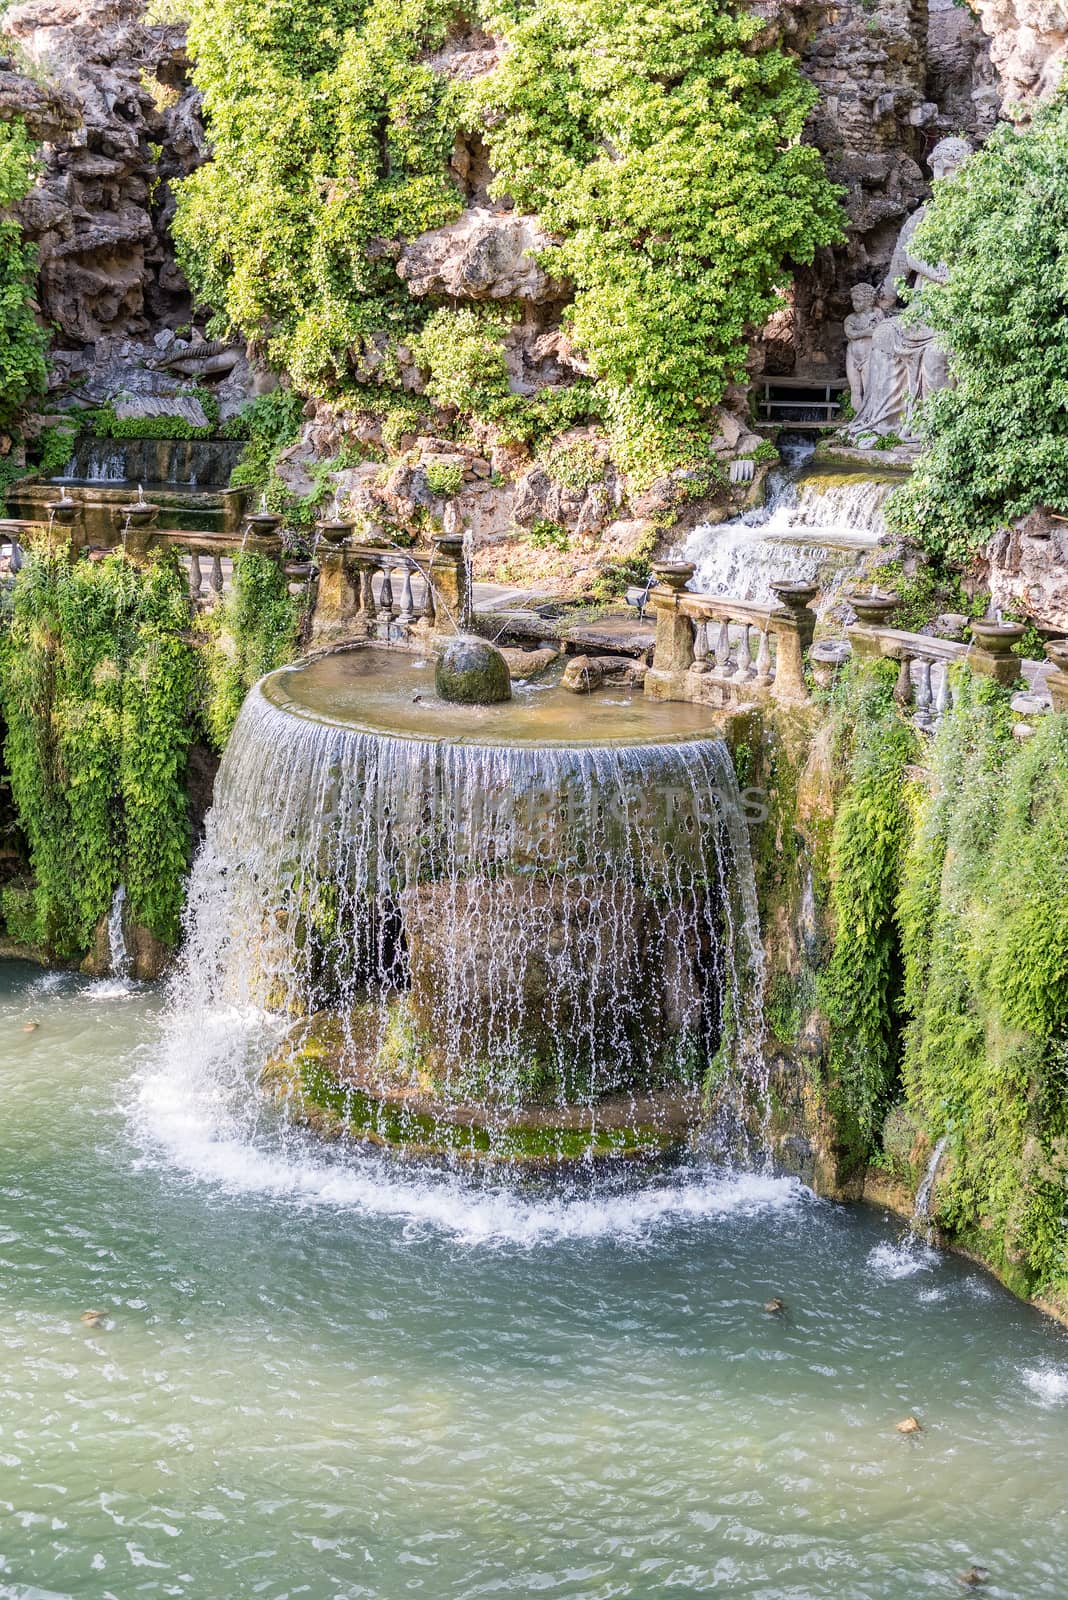 The Oval Fountain in Villa d'Este, Tivoli, Italy by marcorubino